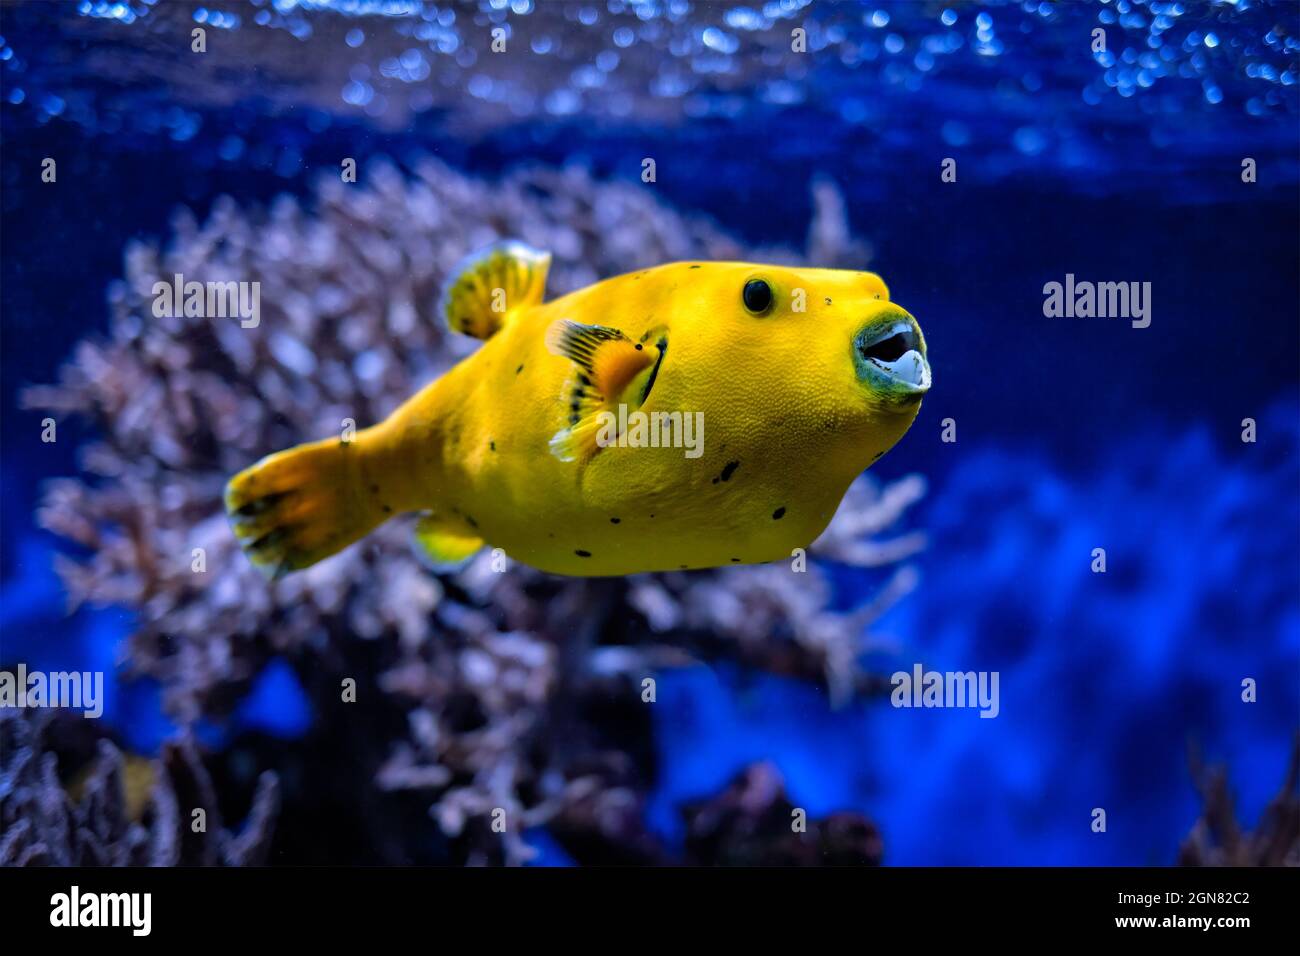 Yellow golden puffer guineafowl puffer fish underwater Stock Photo